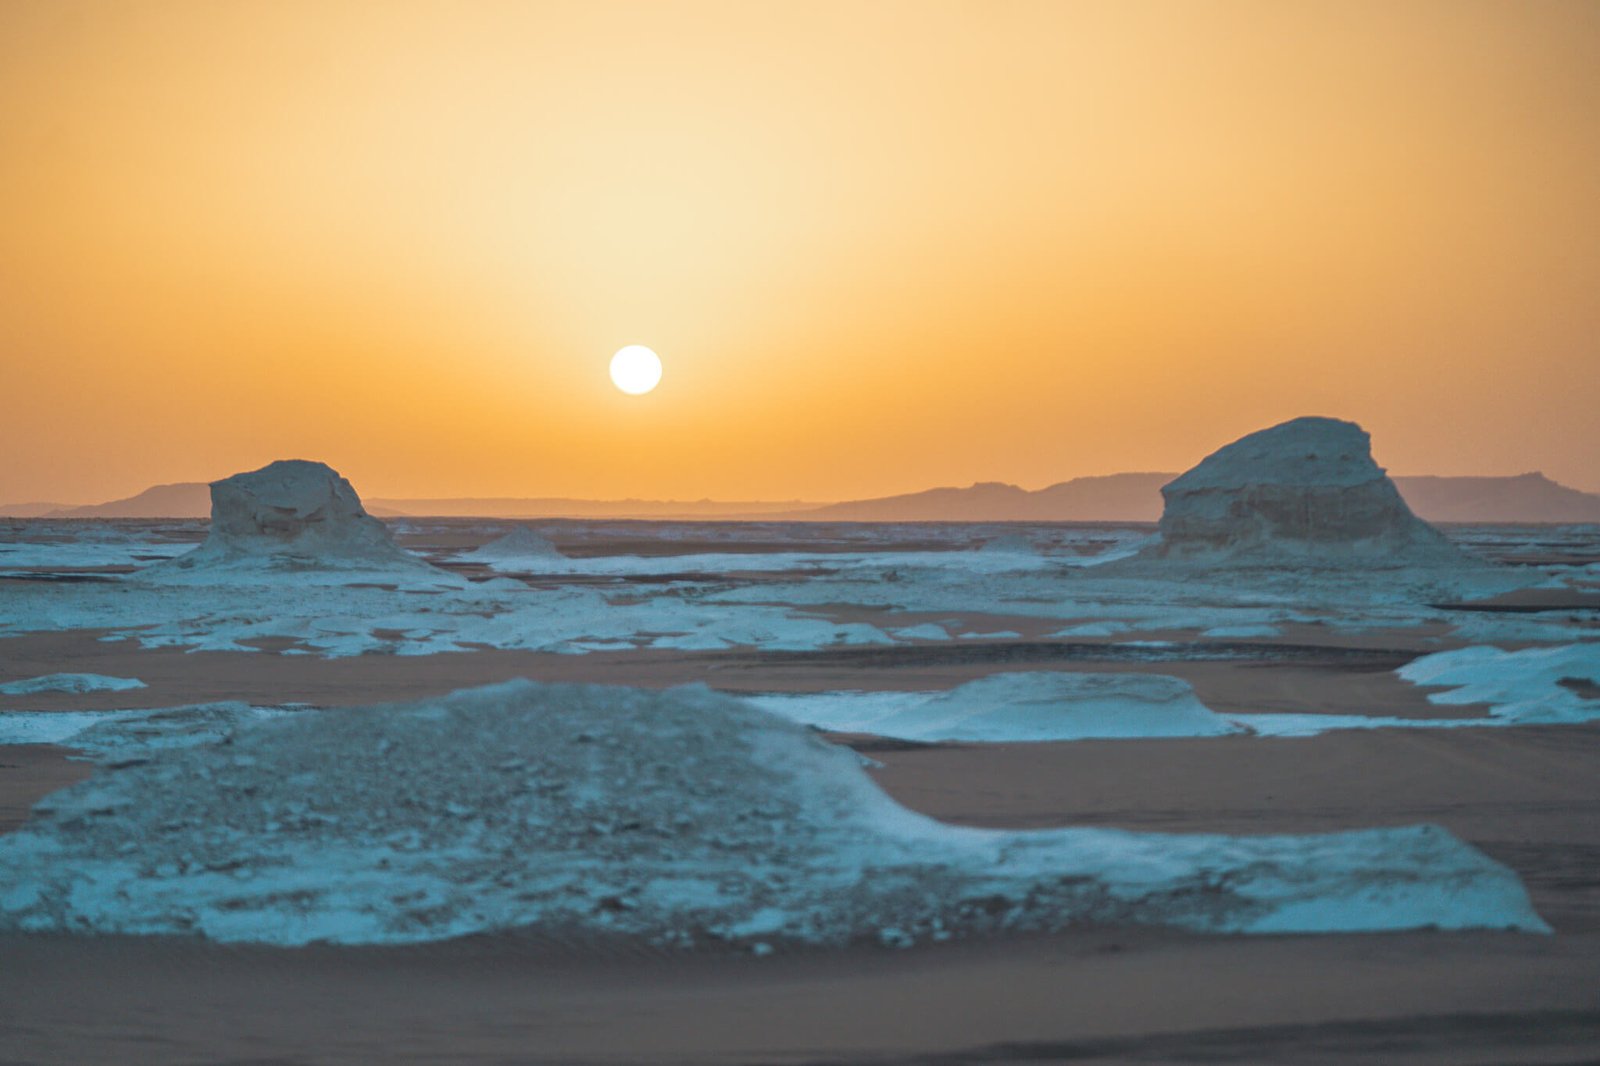 sunset at the white desert in Egypt